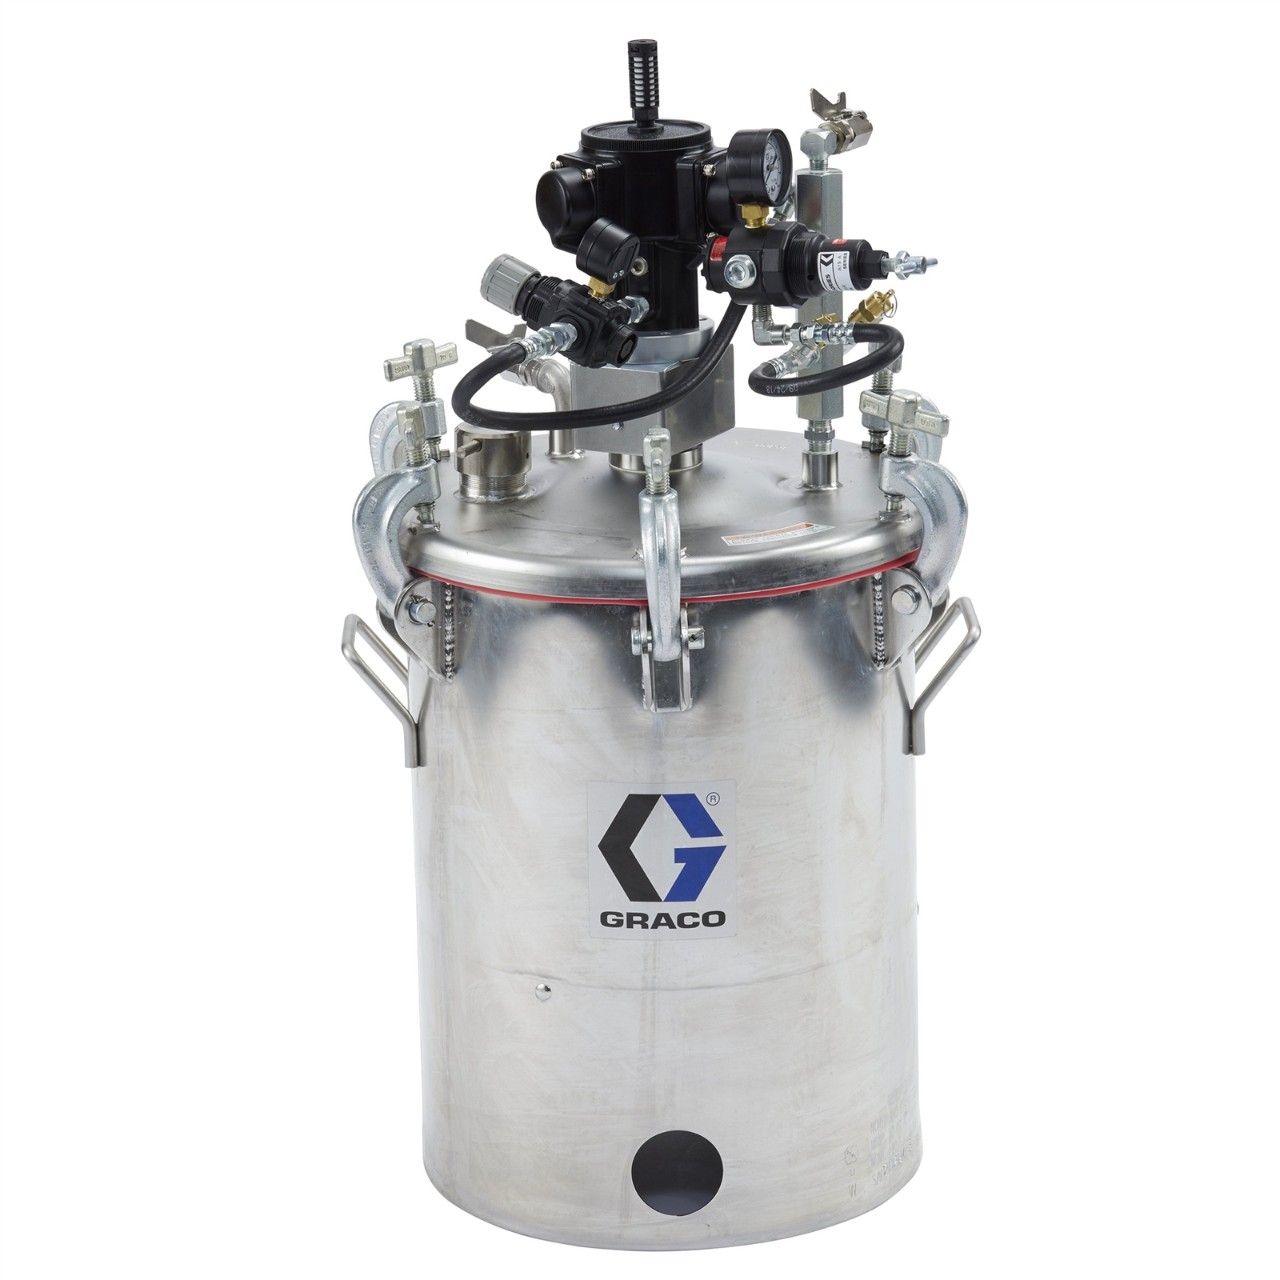 GRACO Rührwerk mit Druckbehälter, 28 Liter (10 Gallonen) - 25C537